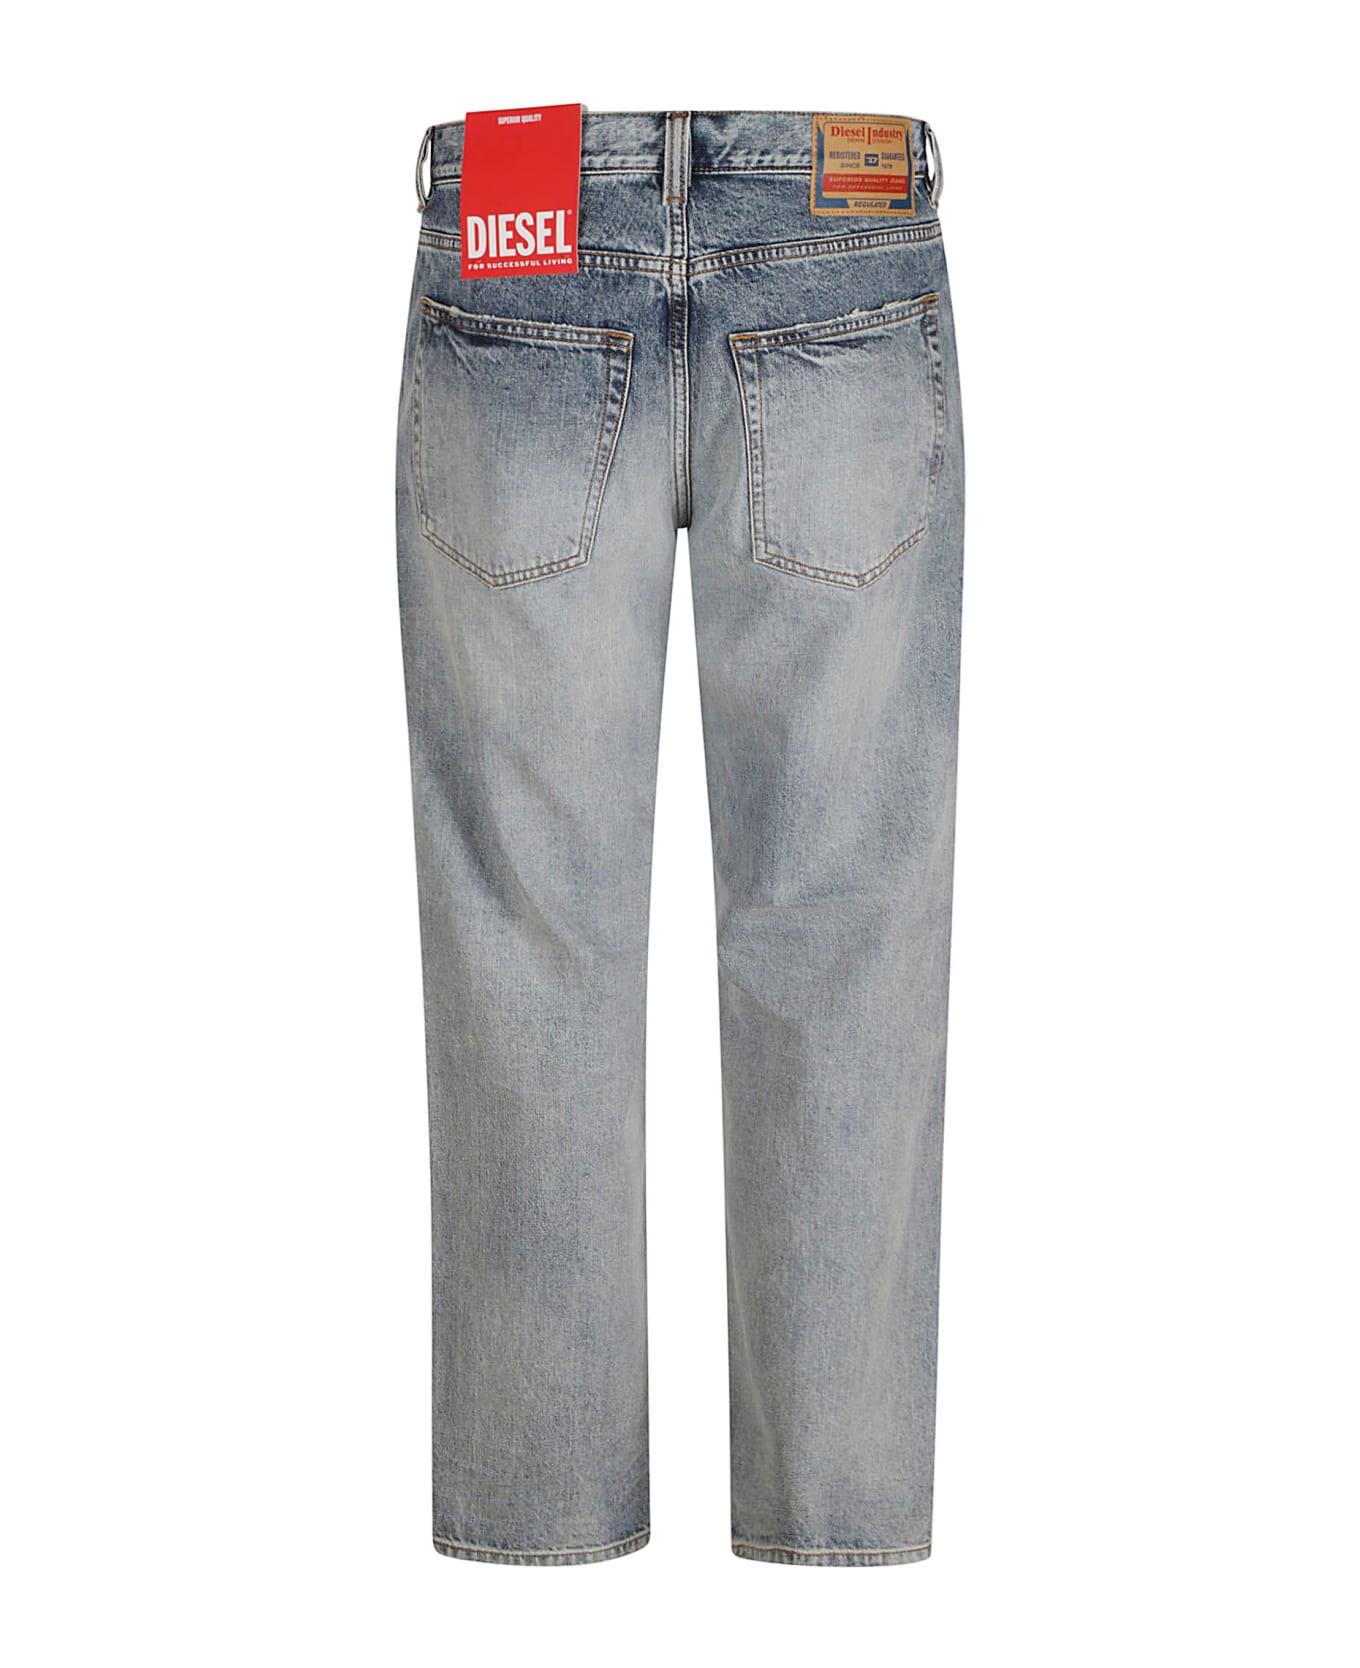 Diesel Straight Buttoned Jeans - Non definito デニム